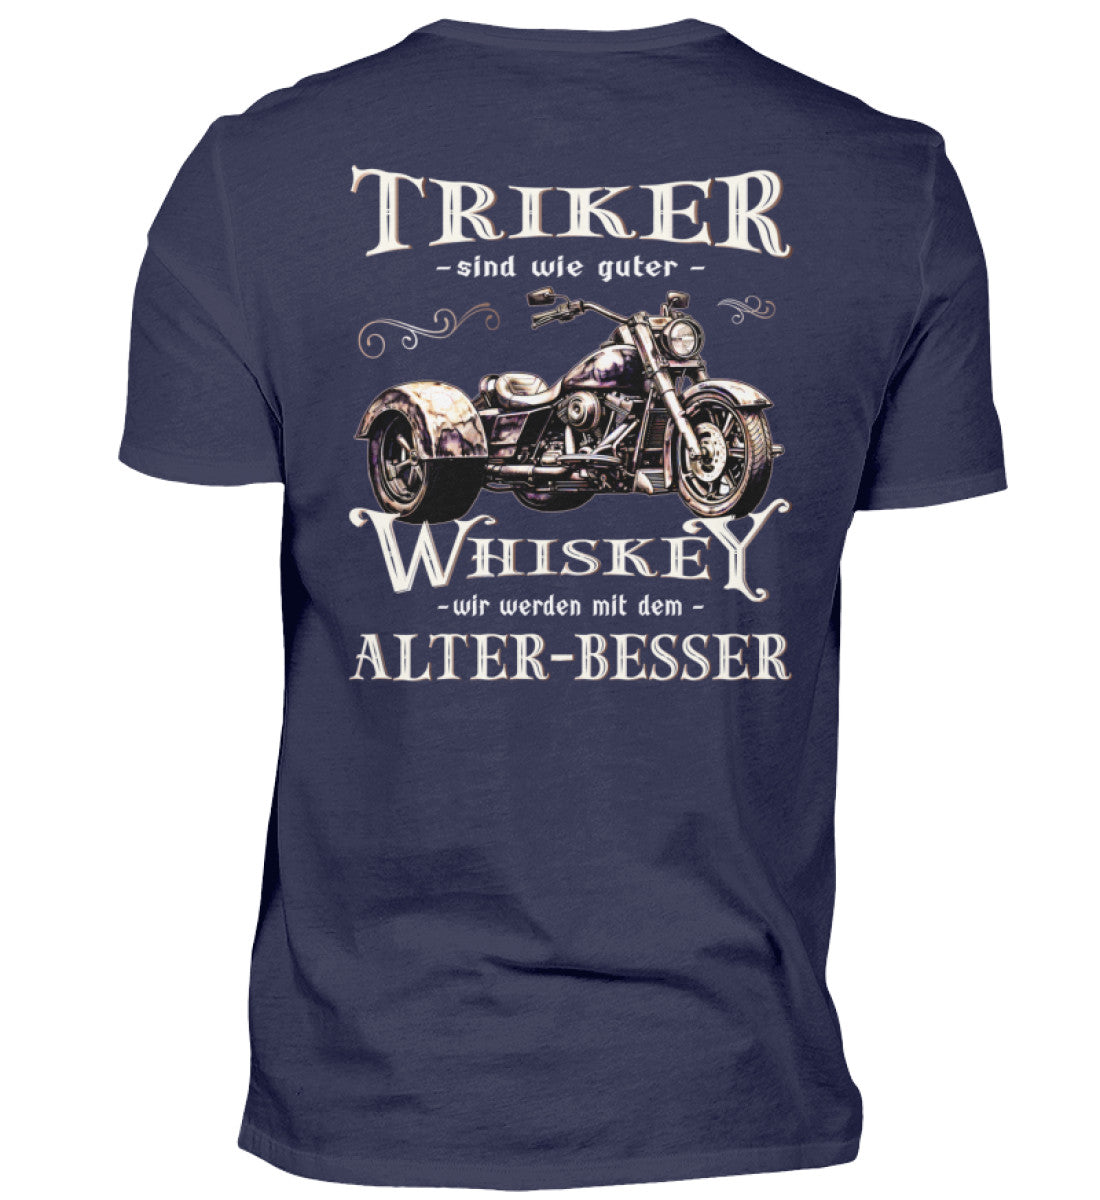 Ein T-Shirt für Trike Fahrer von Wingbikers mit dem Aufdruck, Triker sind wie guter Whiskey - Wir werden mit dem Alter besser, als Back Print, in navy blau.